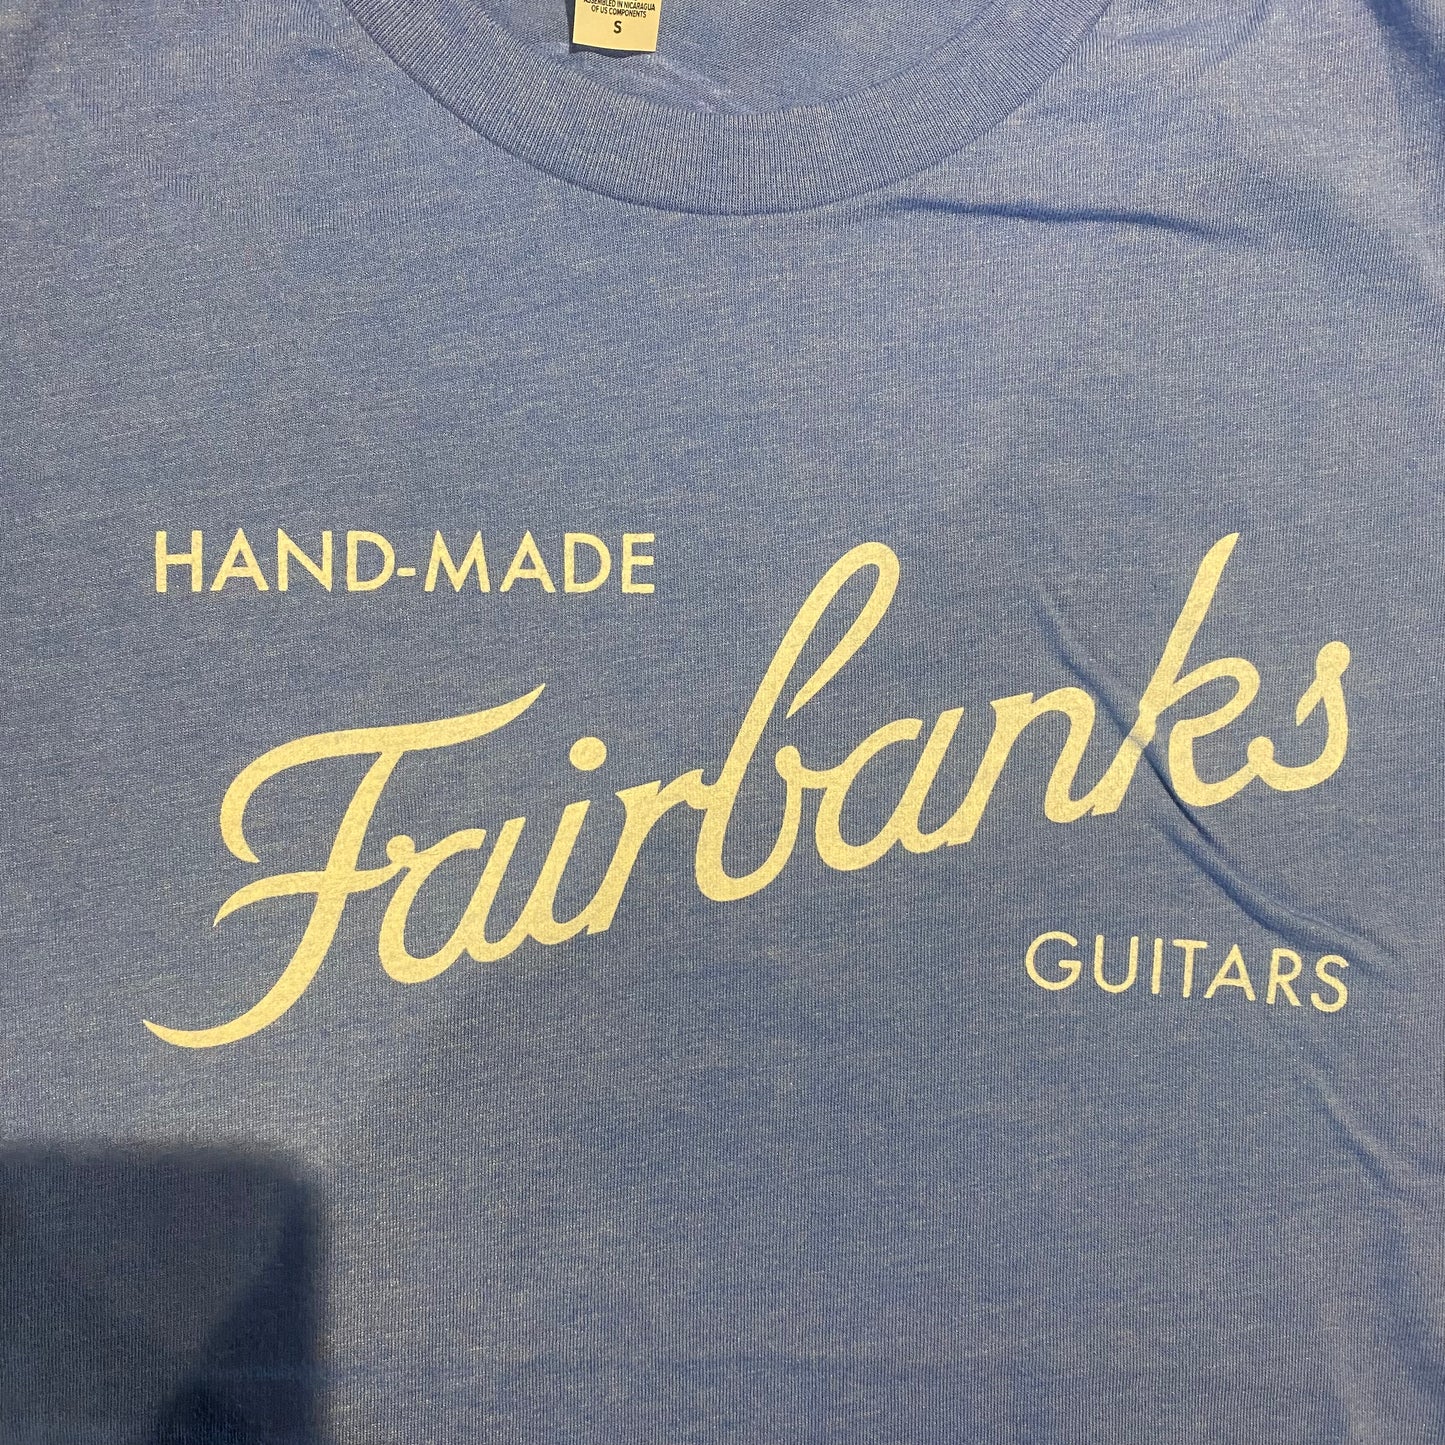 Fairbanks T-Shirt